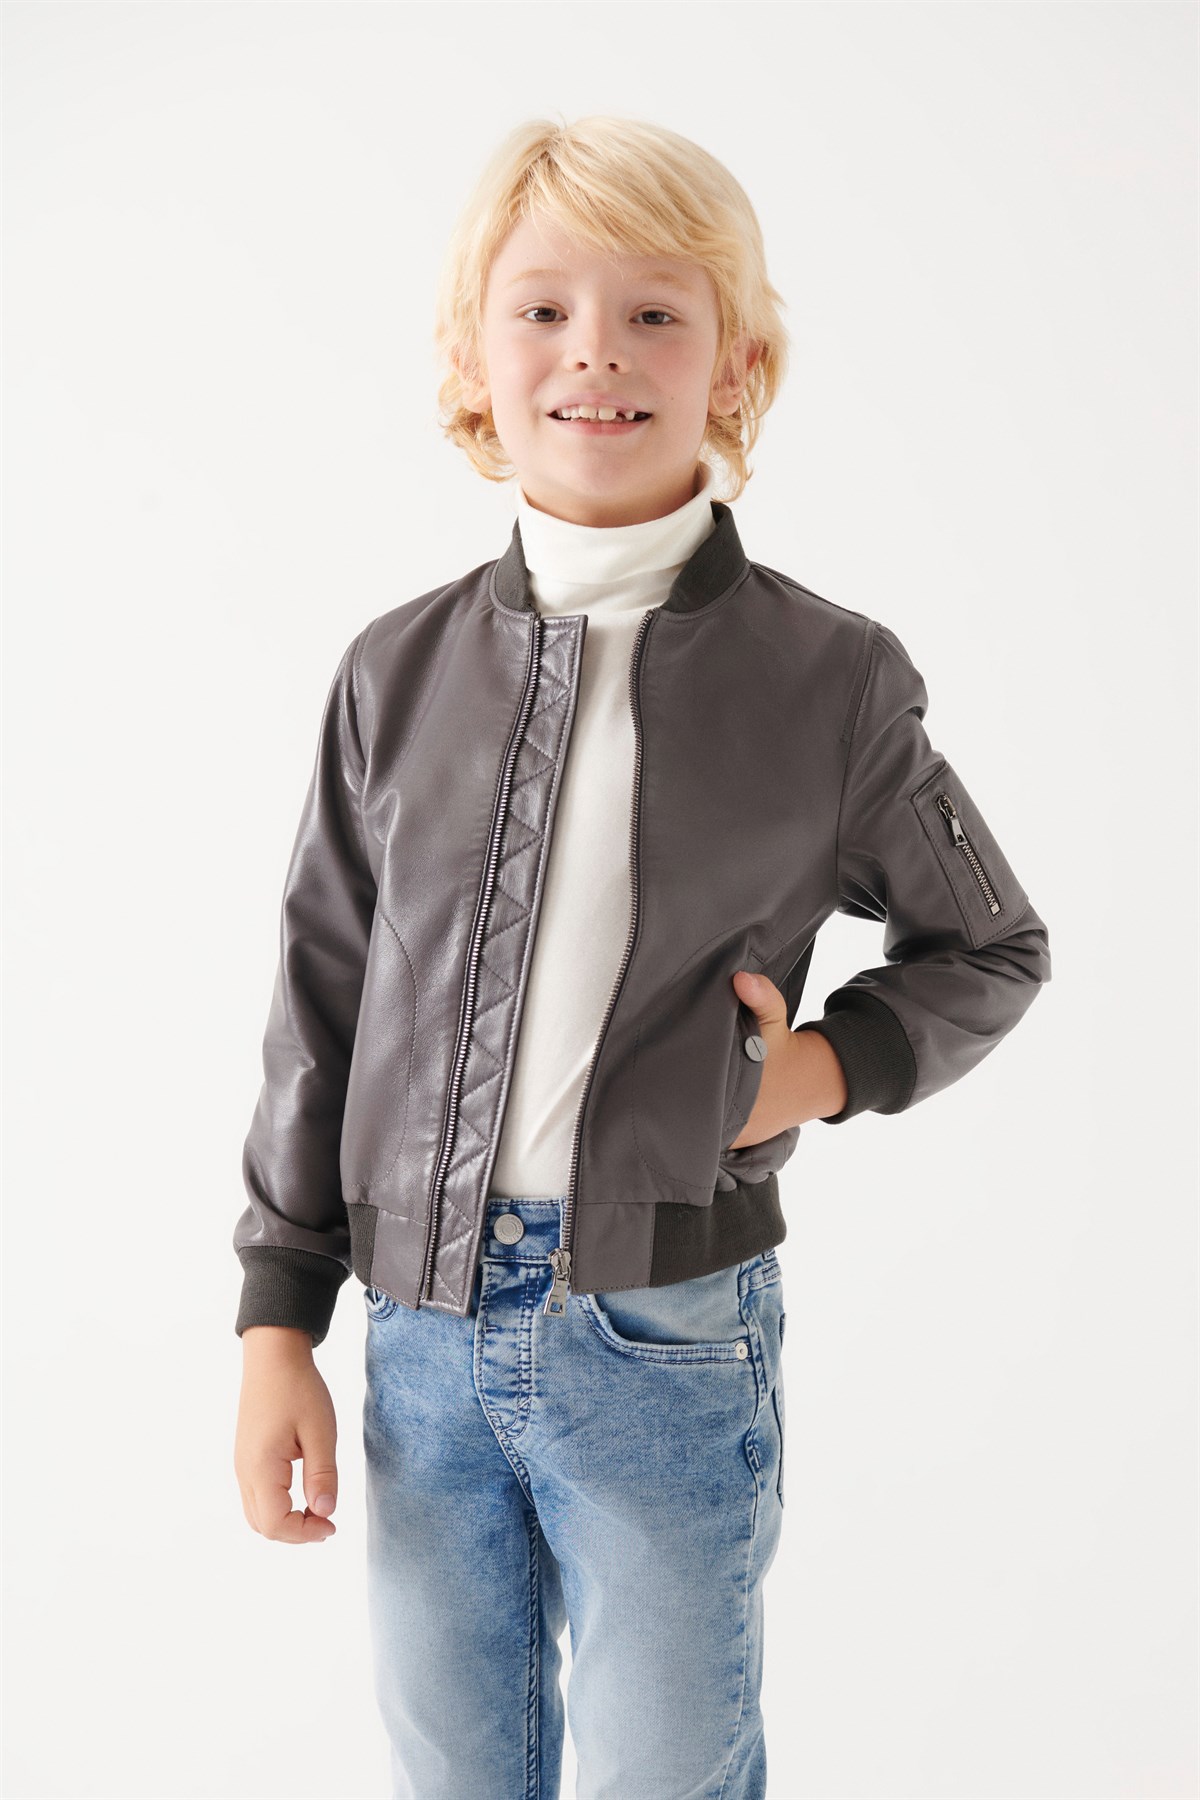 AVATAR Boys Grey Leather Jacket | Boys Leather and Shearling Jacket & Coat